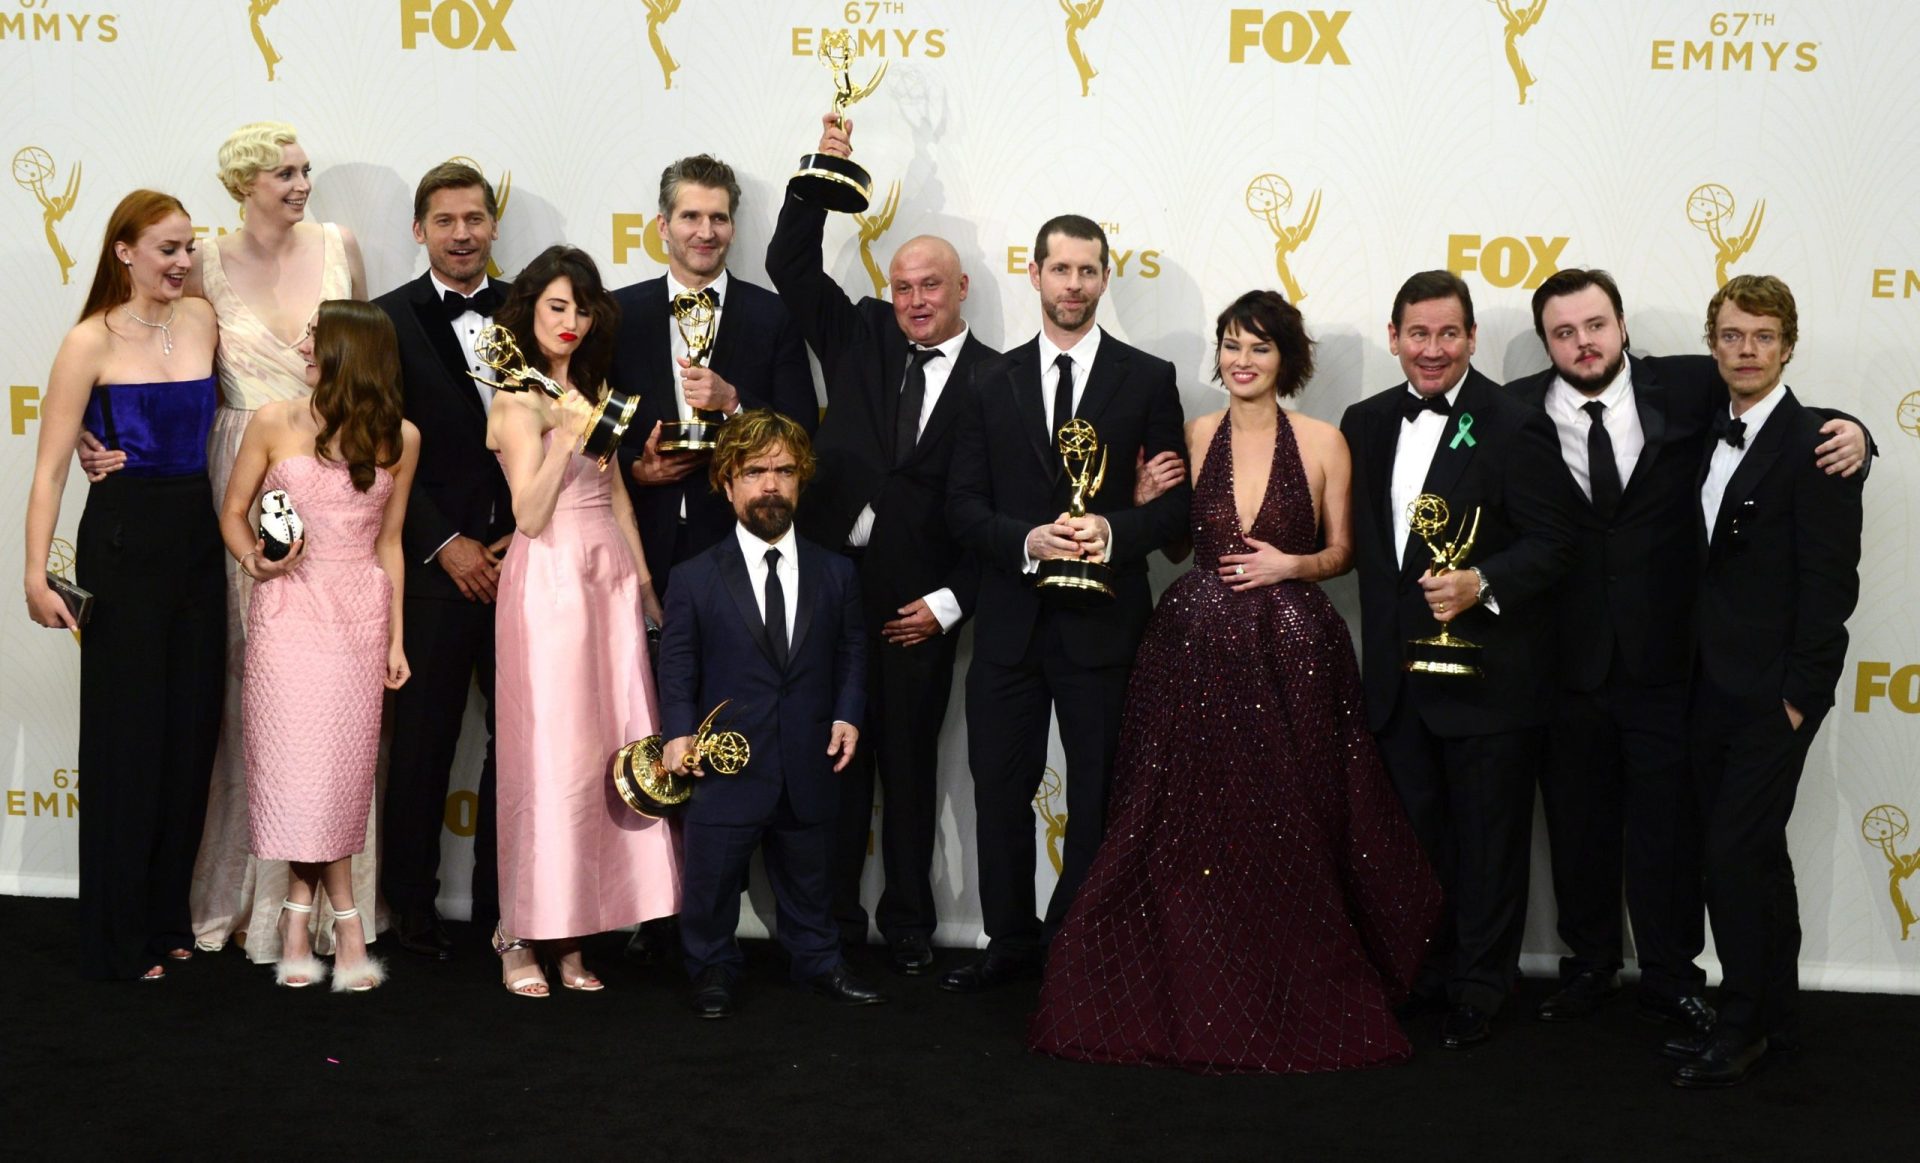 Emmys: A vitória da ‘Guerra dos Tronos’ e a queda de uma ‘Família’